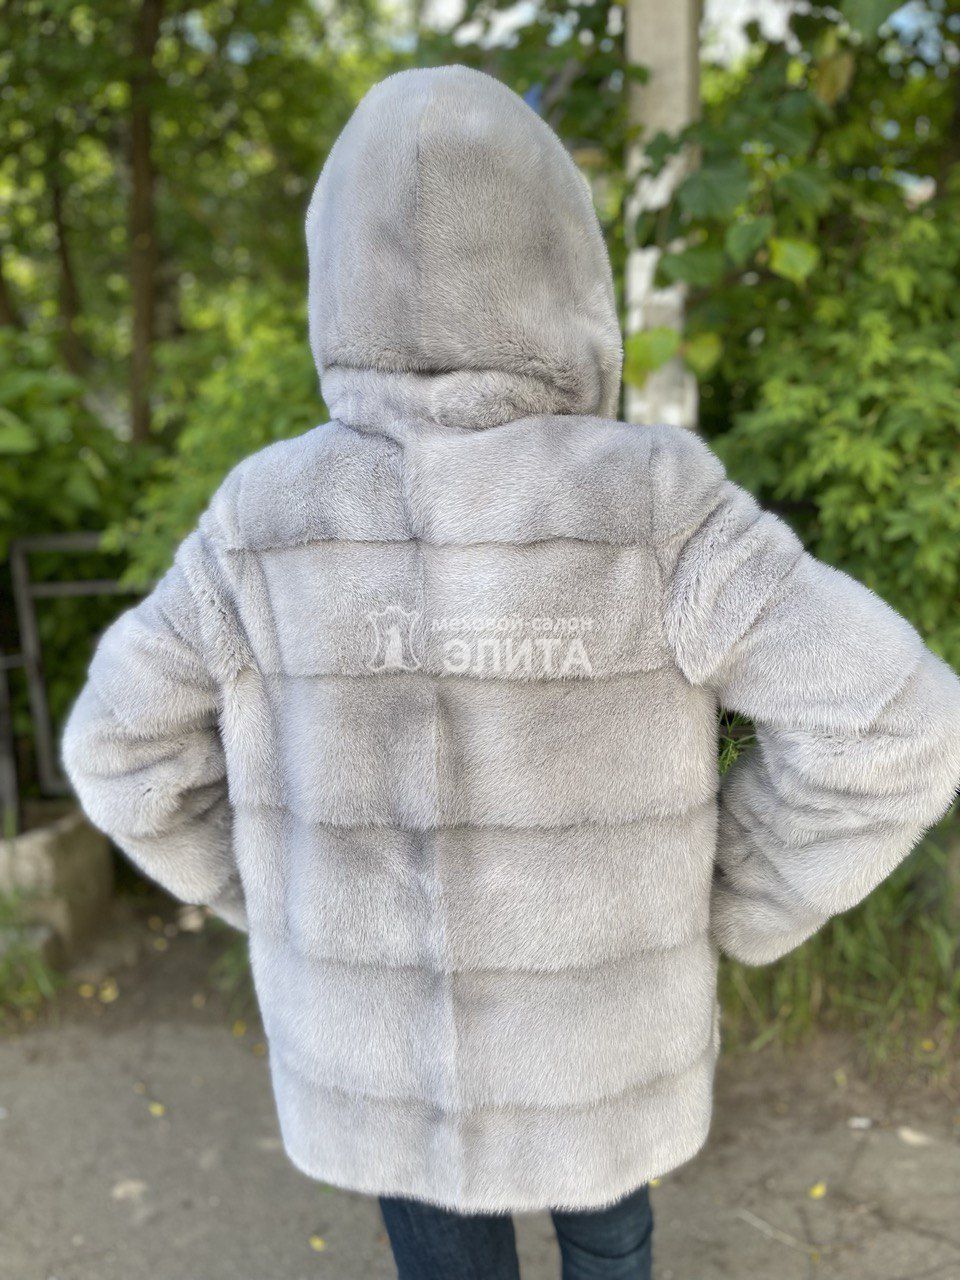 Куртка из норки S-1069, р-р 42-48, цена 112500 рублей в интернет-магазине кожи и меха ЭЛИТА. Вид 2